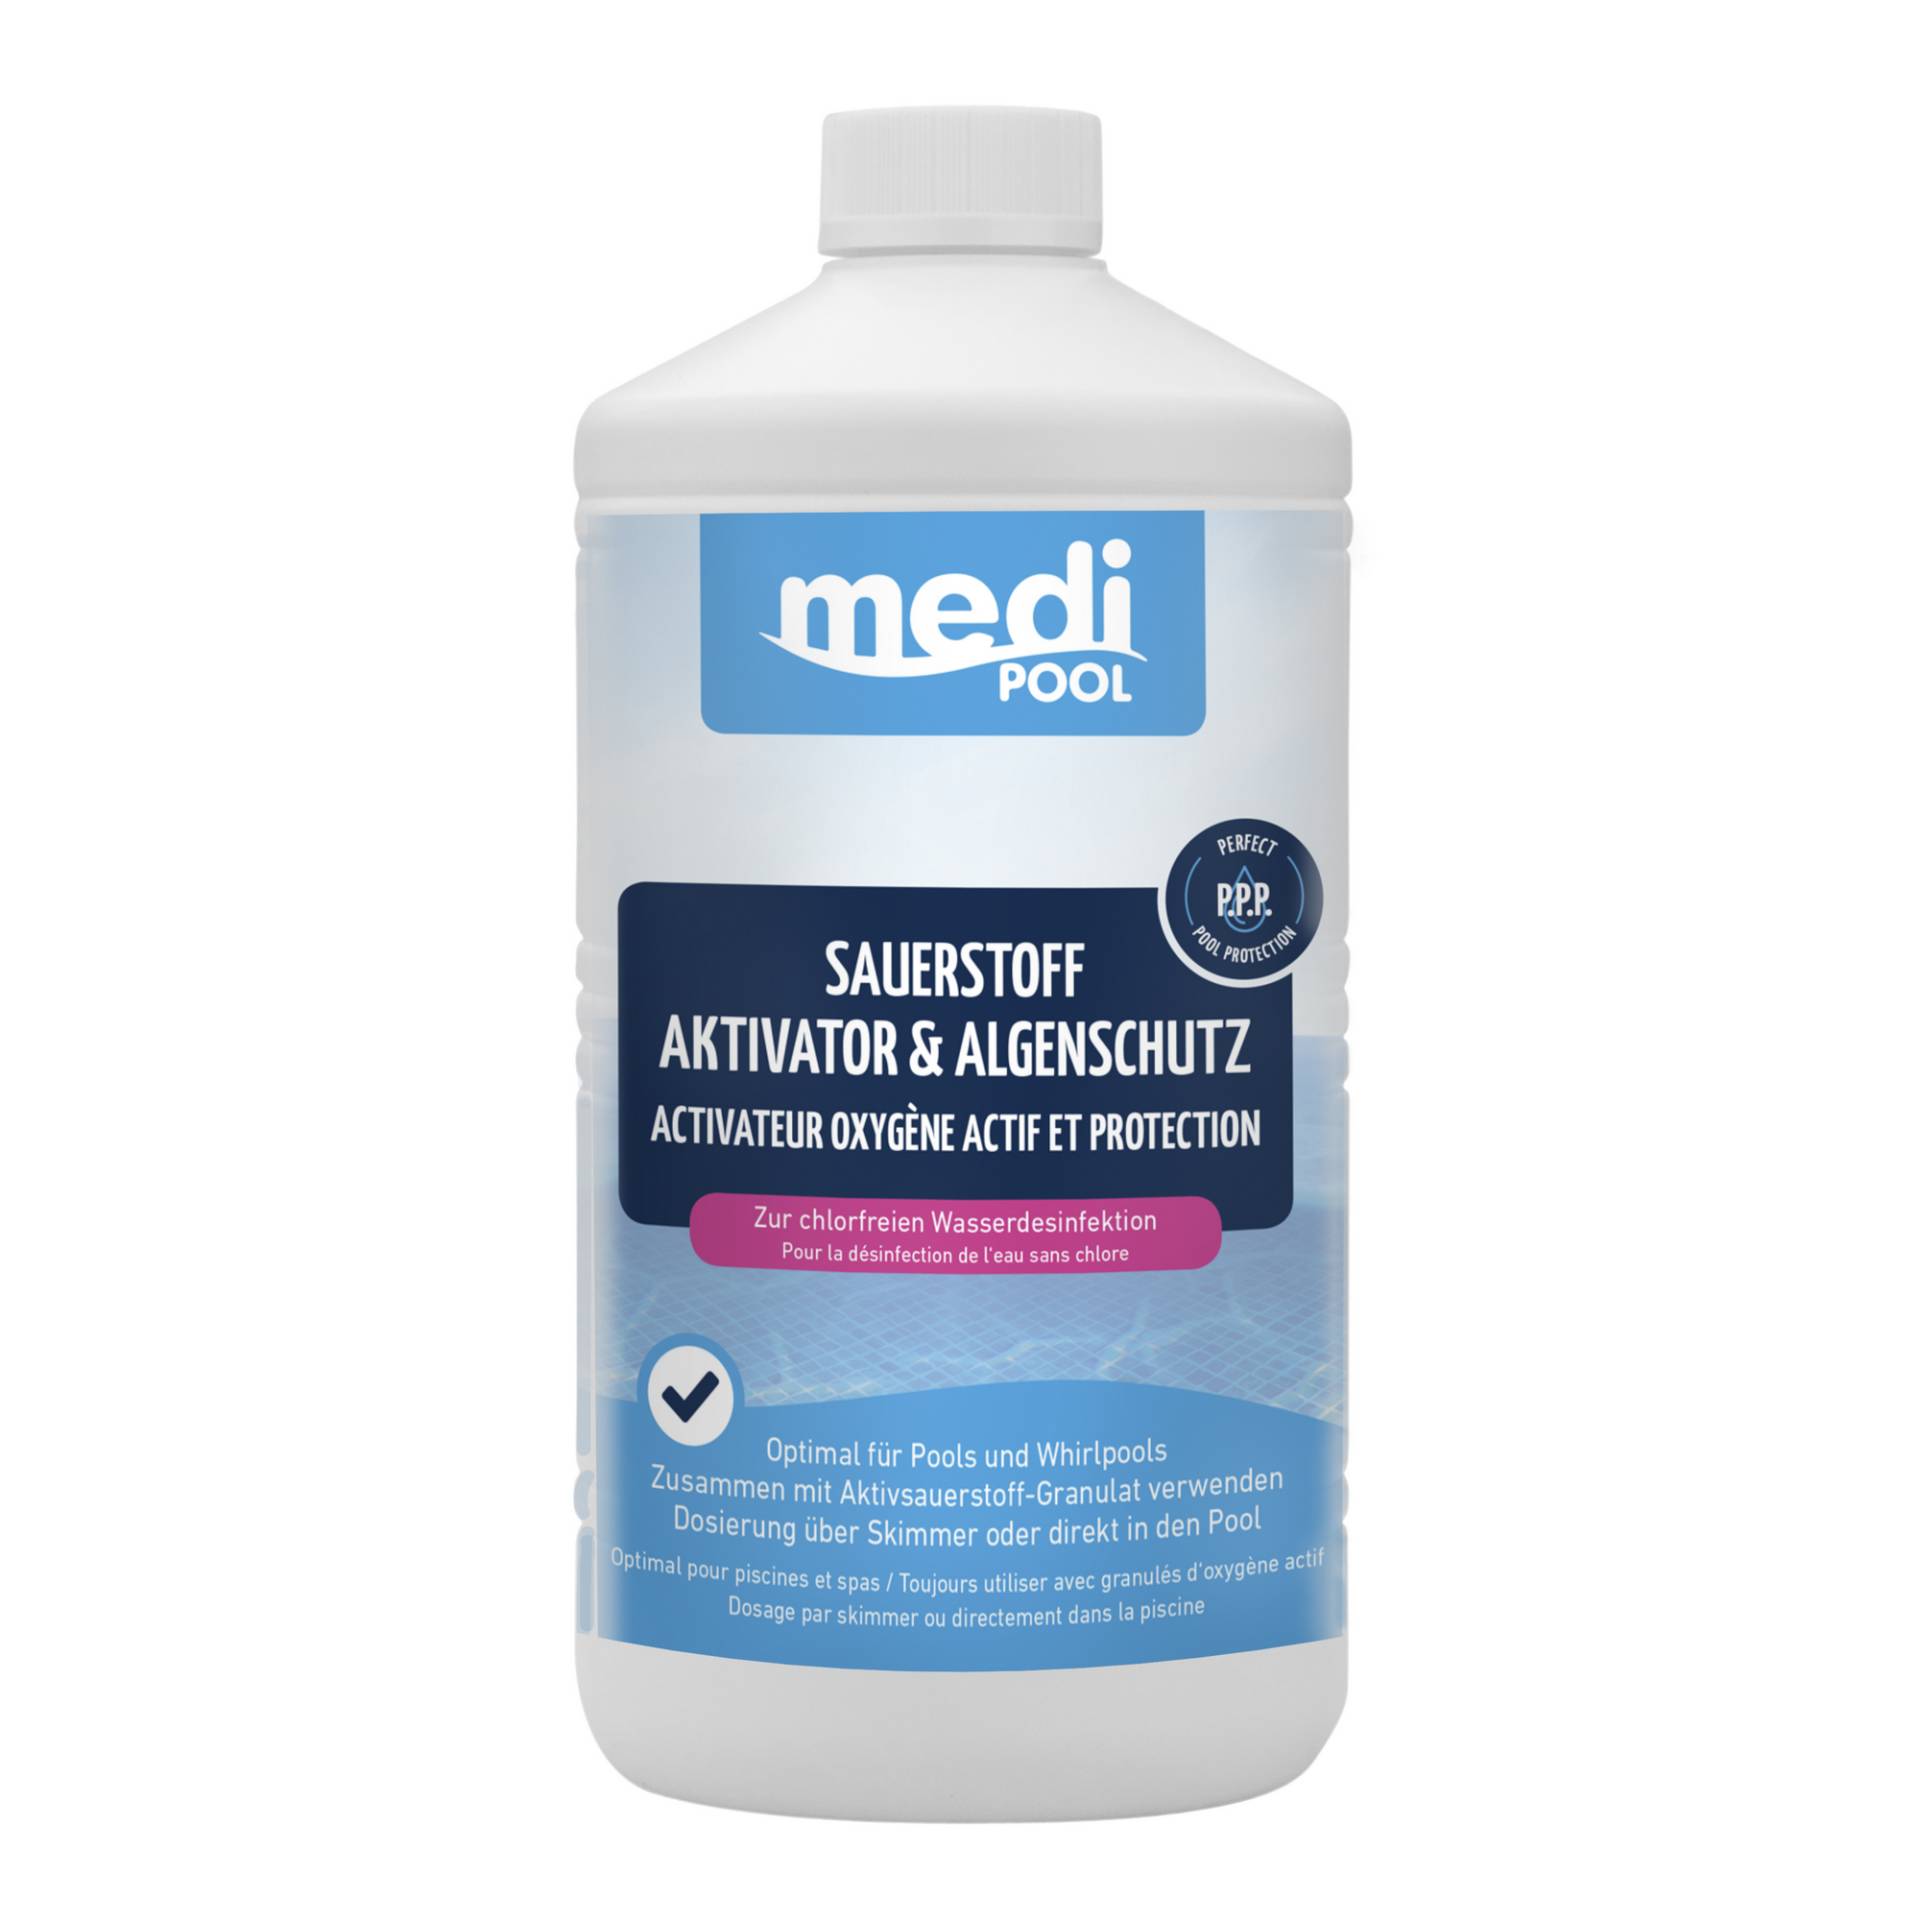 mediPOOL Sauerstoff Aktivator & Algenschutz 1 Liter von mediPOOL